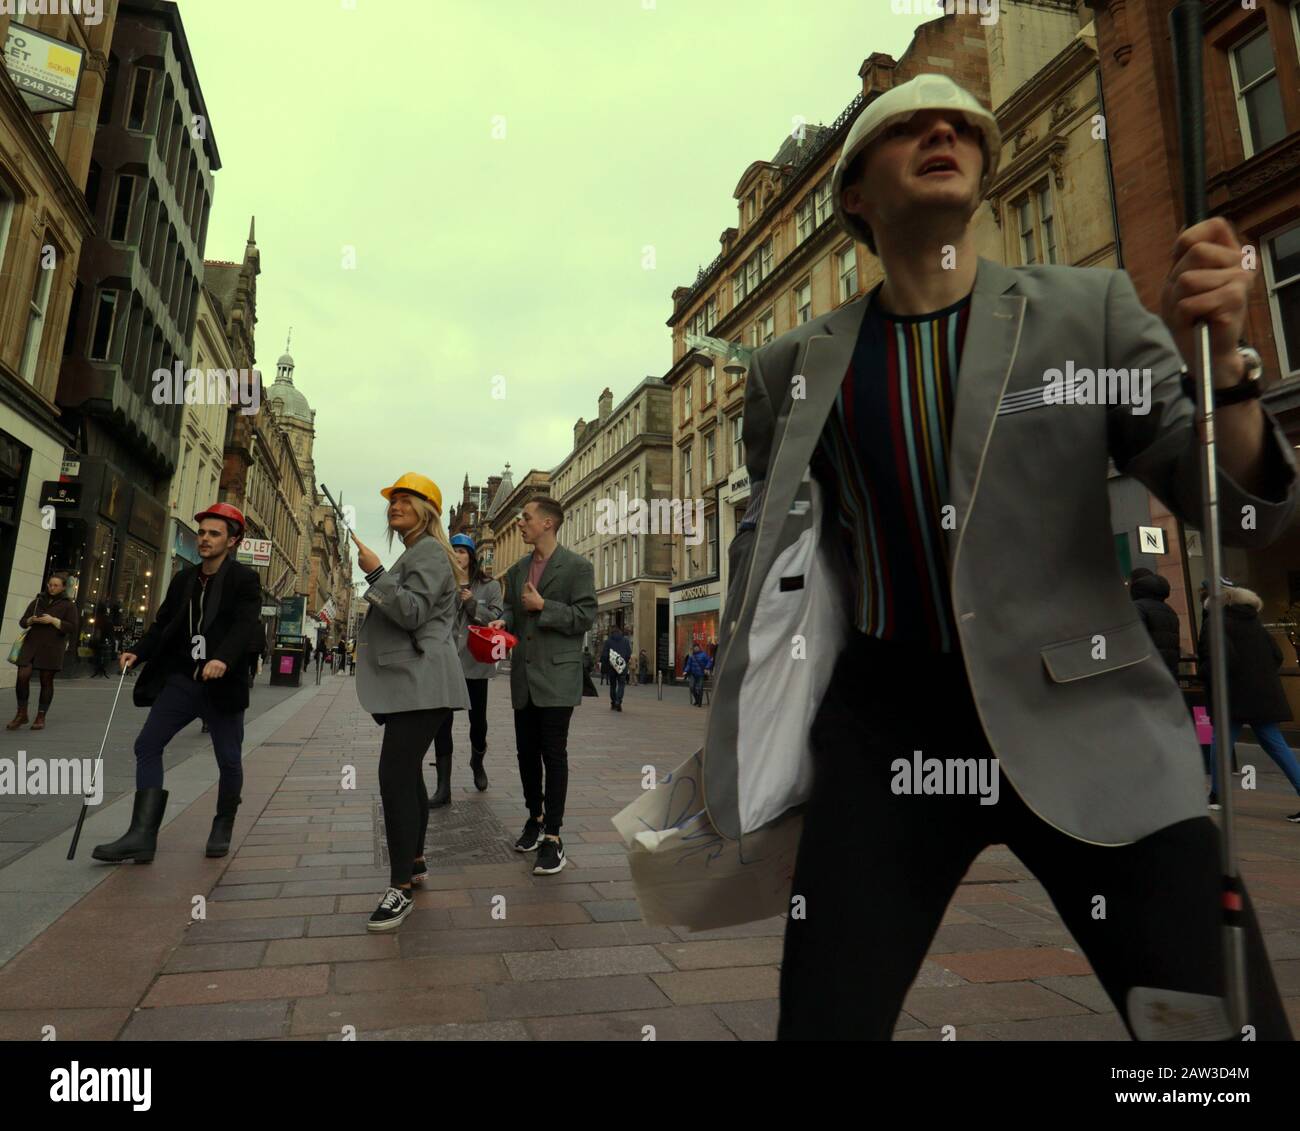 Glasgow, Schottland, Großbritannien, 6. Februar 2020: Großbritannien Wetter: Sonnige Meile, die das Einkaufszentrum der Buchanan Street ist, sah Straßentheater auf seiner Länge als "SURGE", eine Gruppe, die Straßenkunst, physisches Theater und Zirkus aufführt, genossen das gute Wetter. Copywrite Gerard Ferry/Alamy Live News Stockfoto